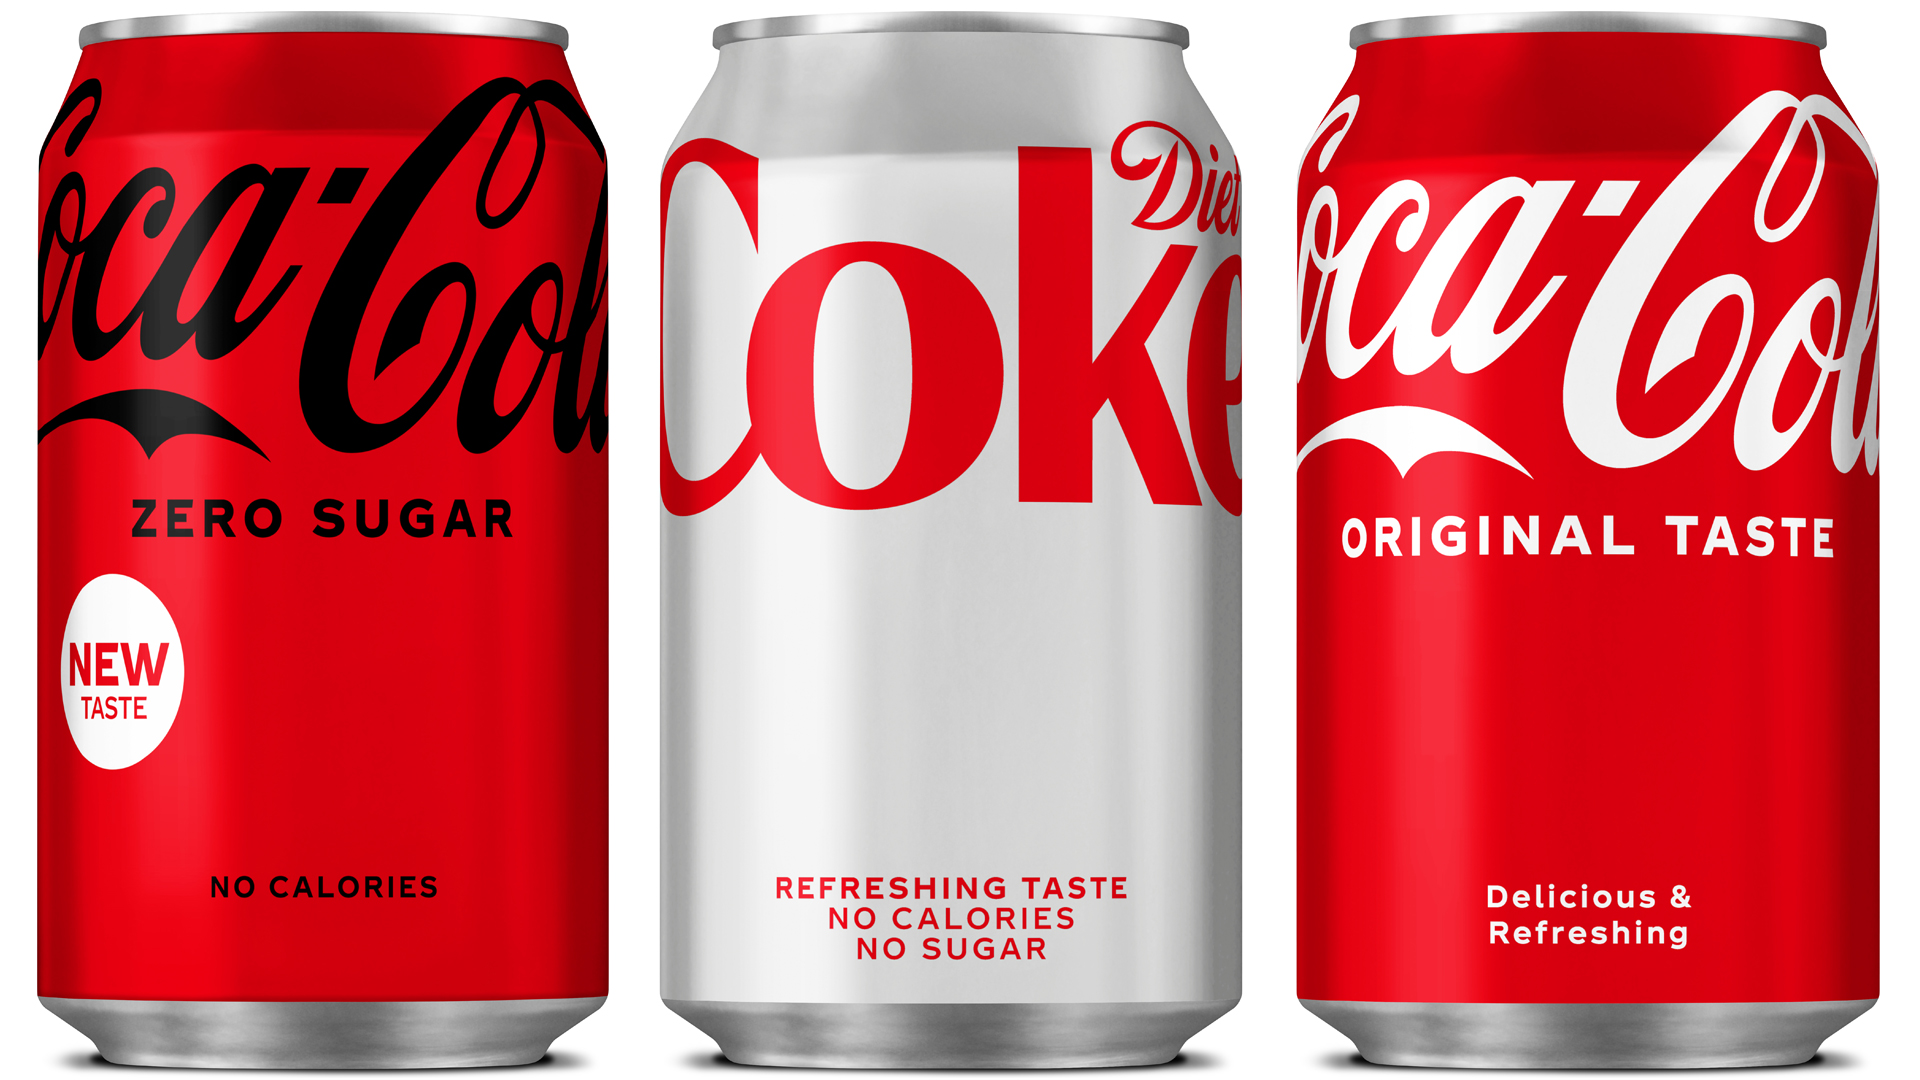 Cola coca Fact Check: